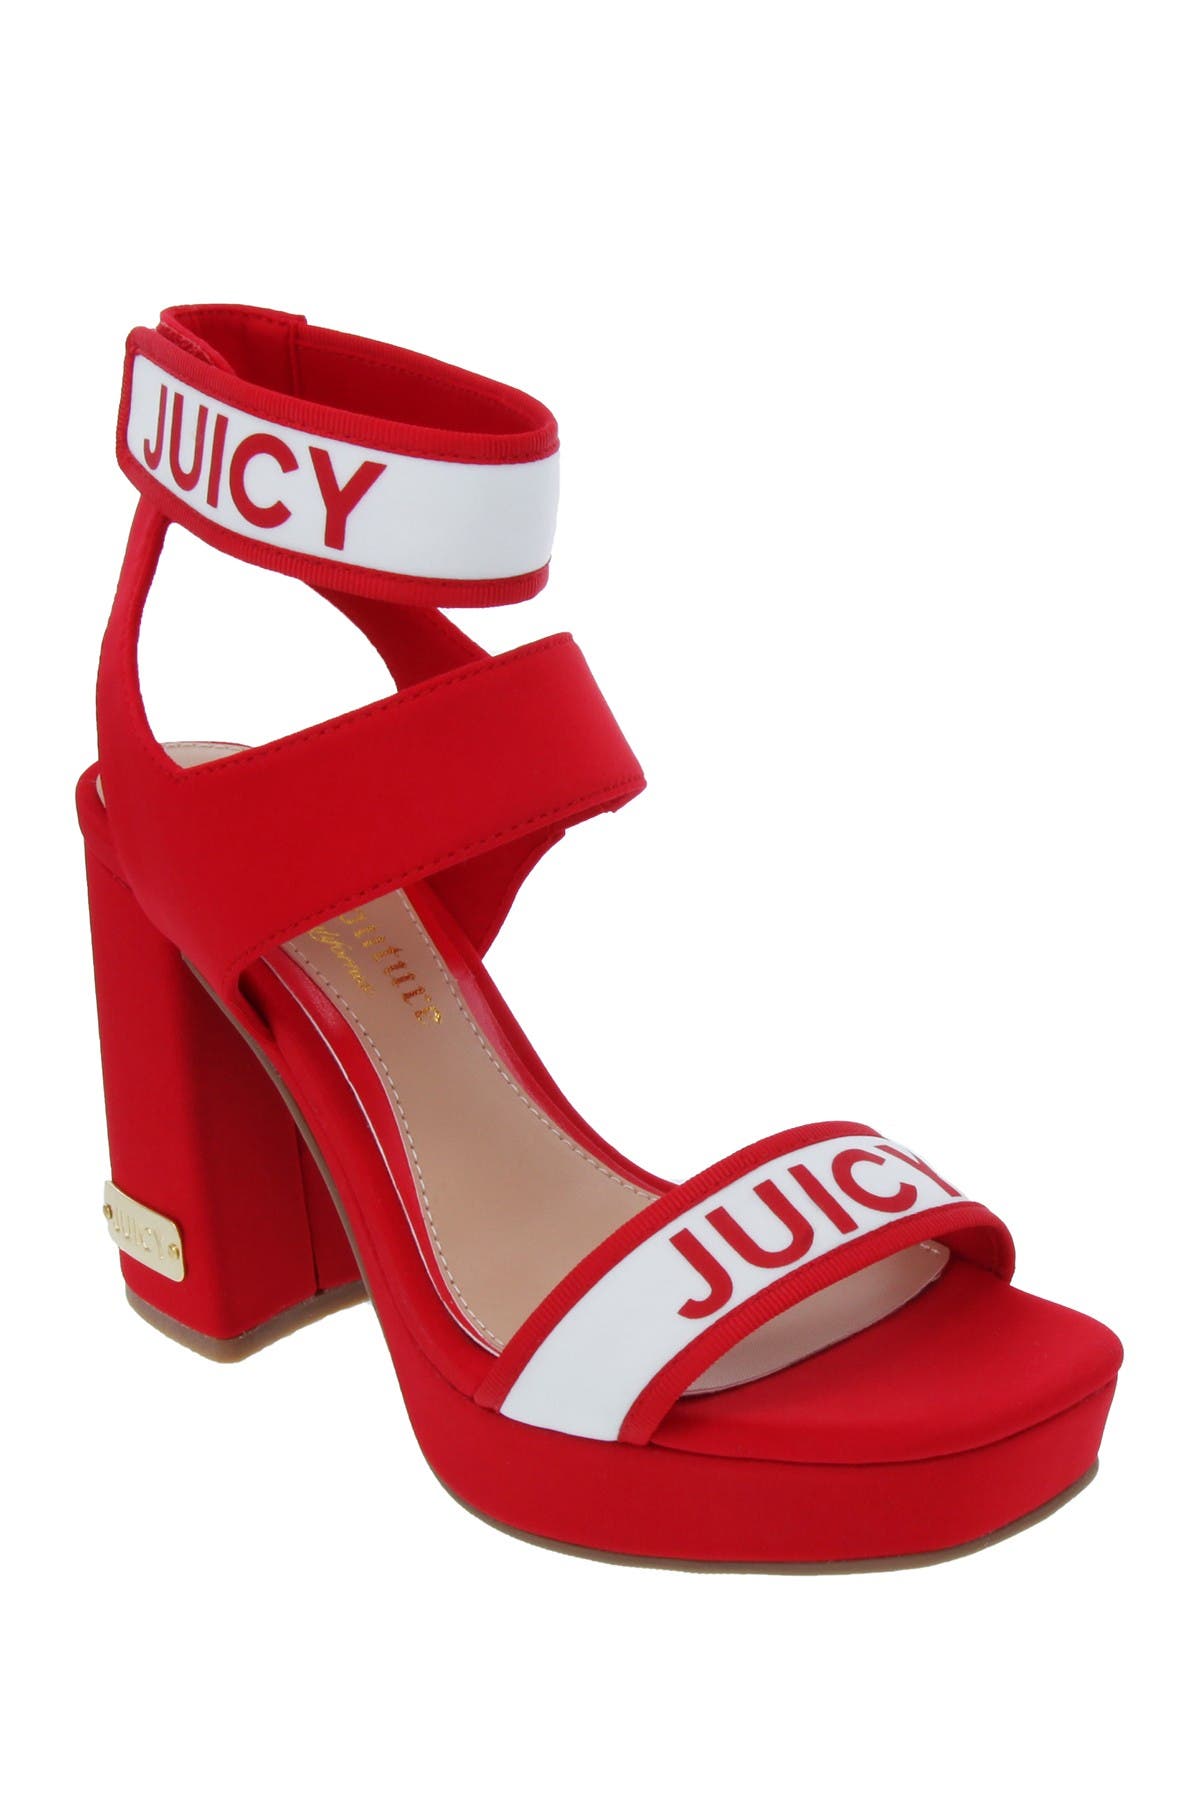 juicy couture high heels